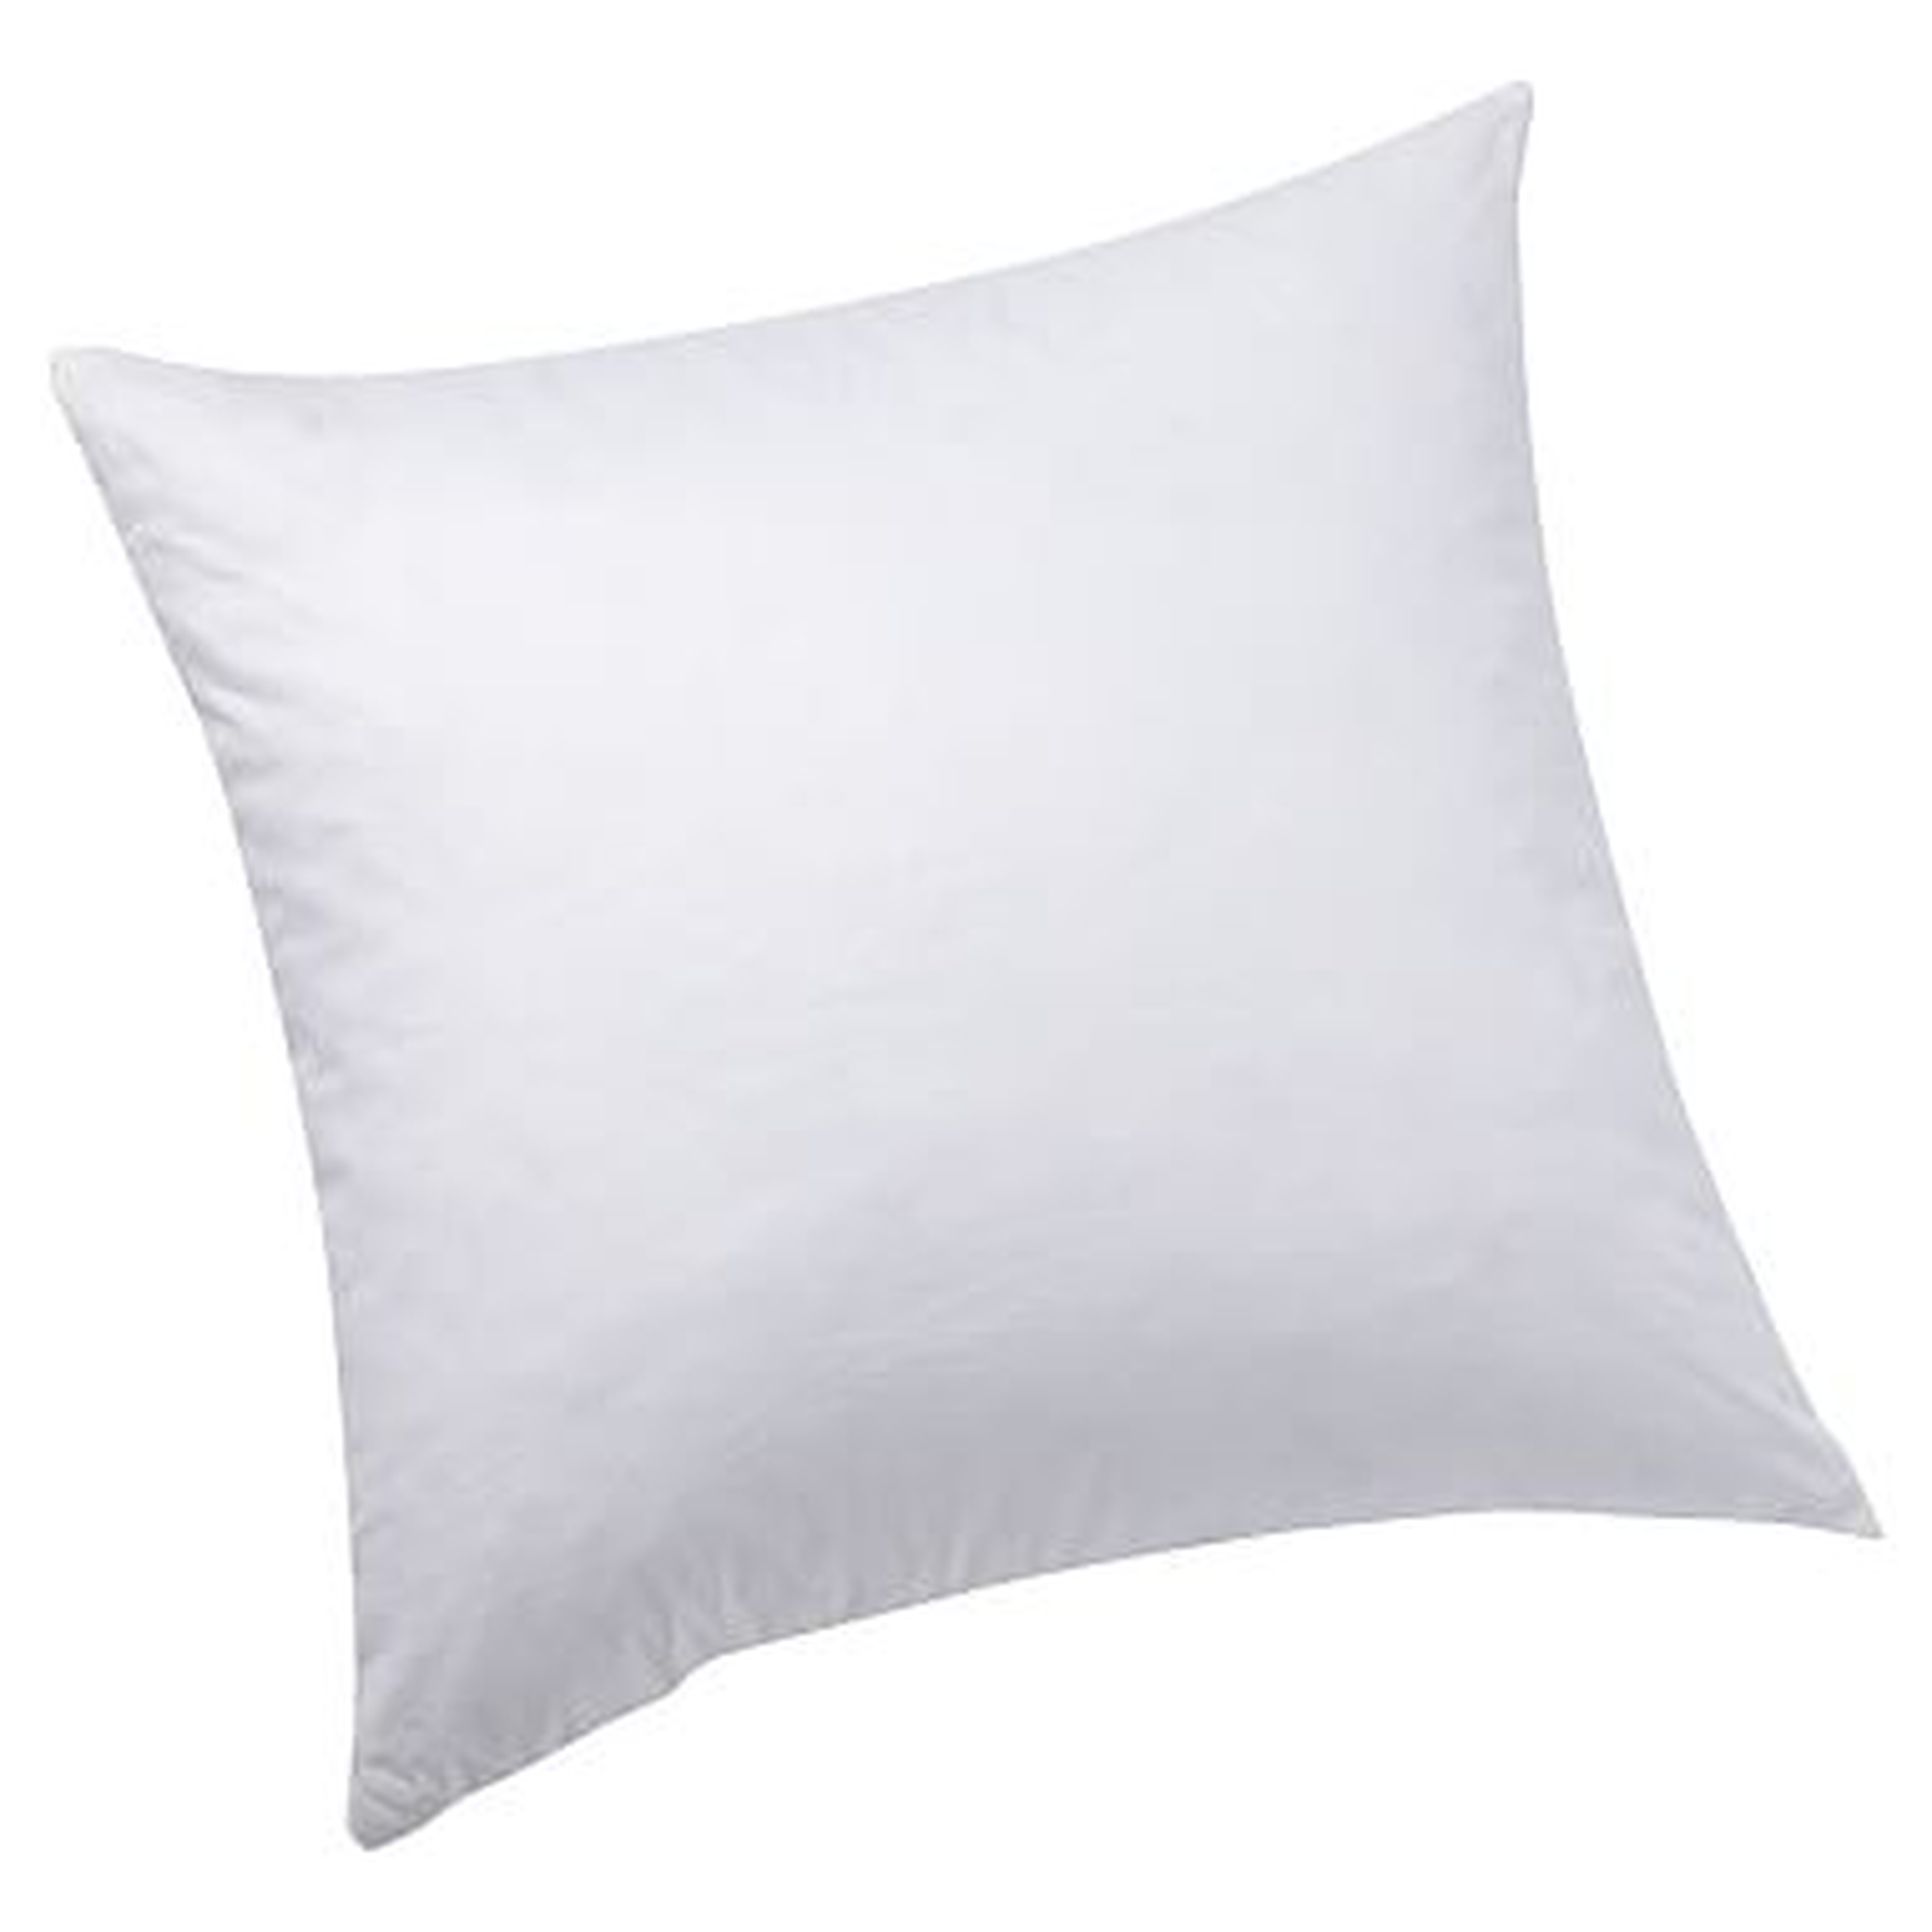 Spiraloft Pillow Insert, Euro 26" Square - Pottery Barn Teen